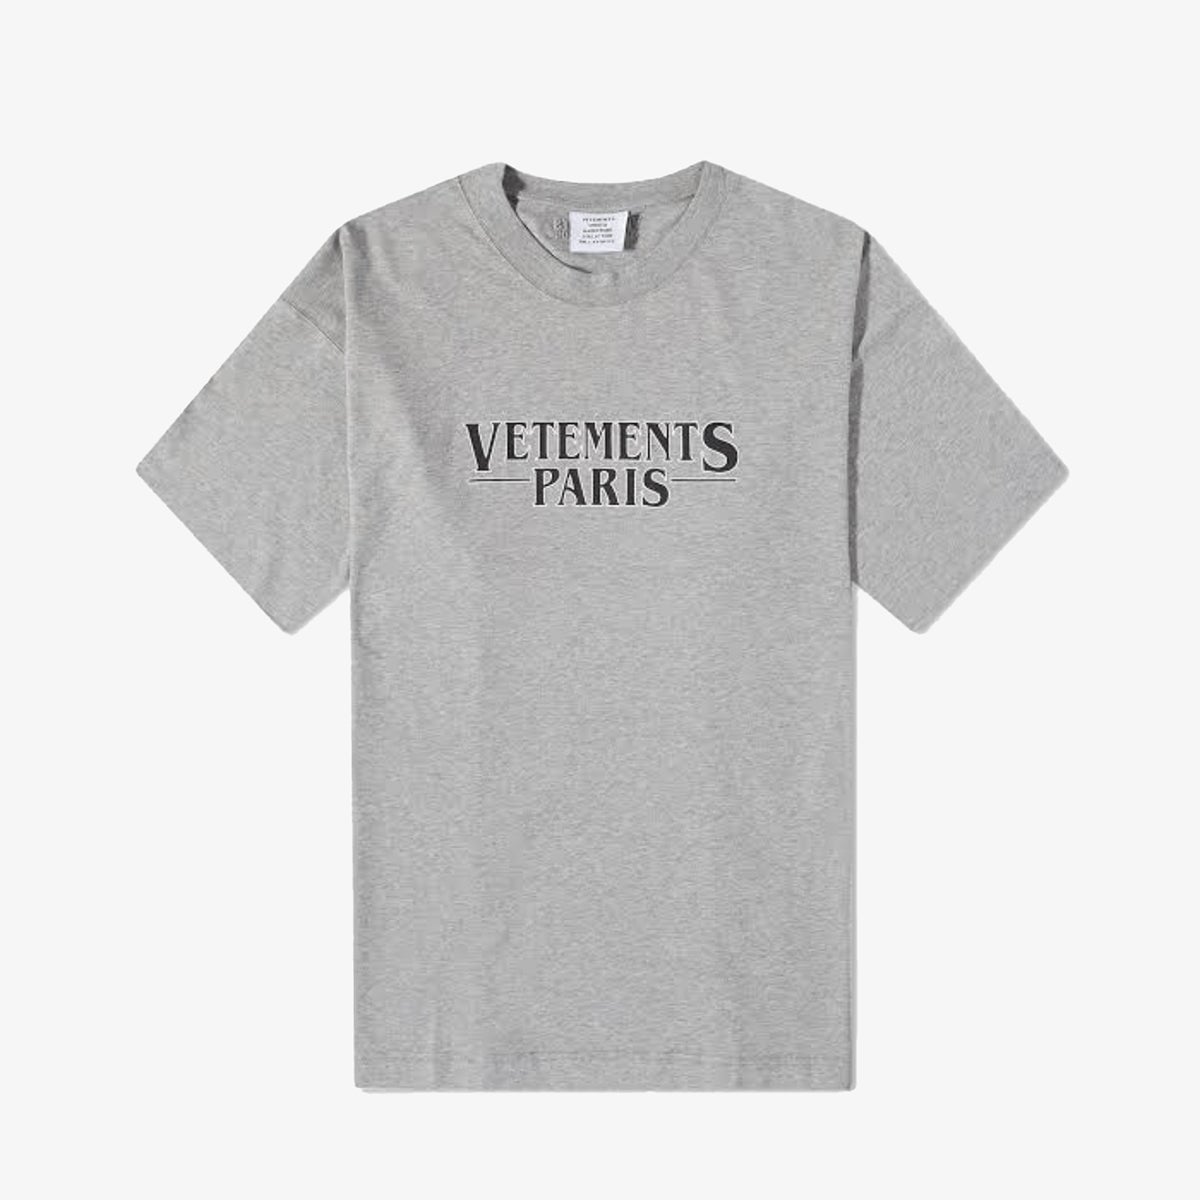 Vetements Paris “Grey Melange” T-shirt T-Shirts Vetements